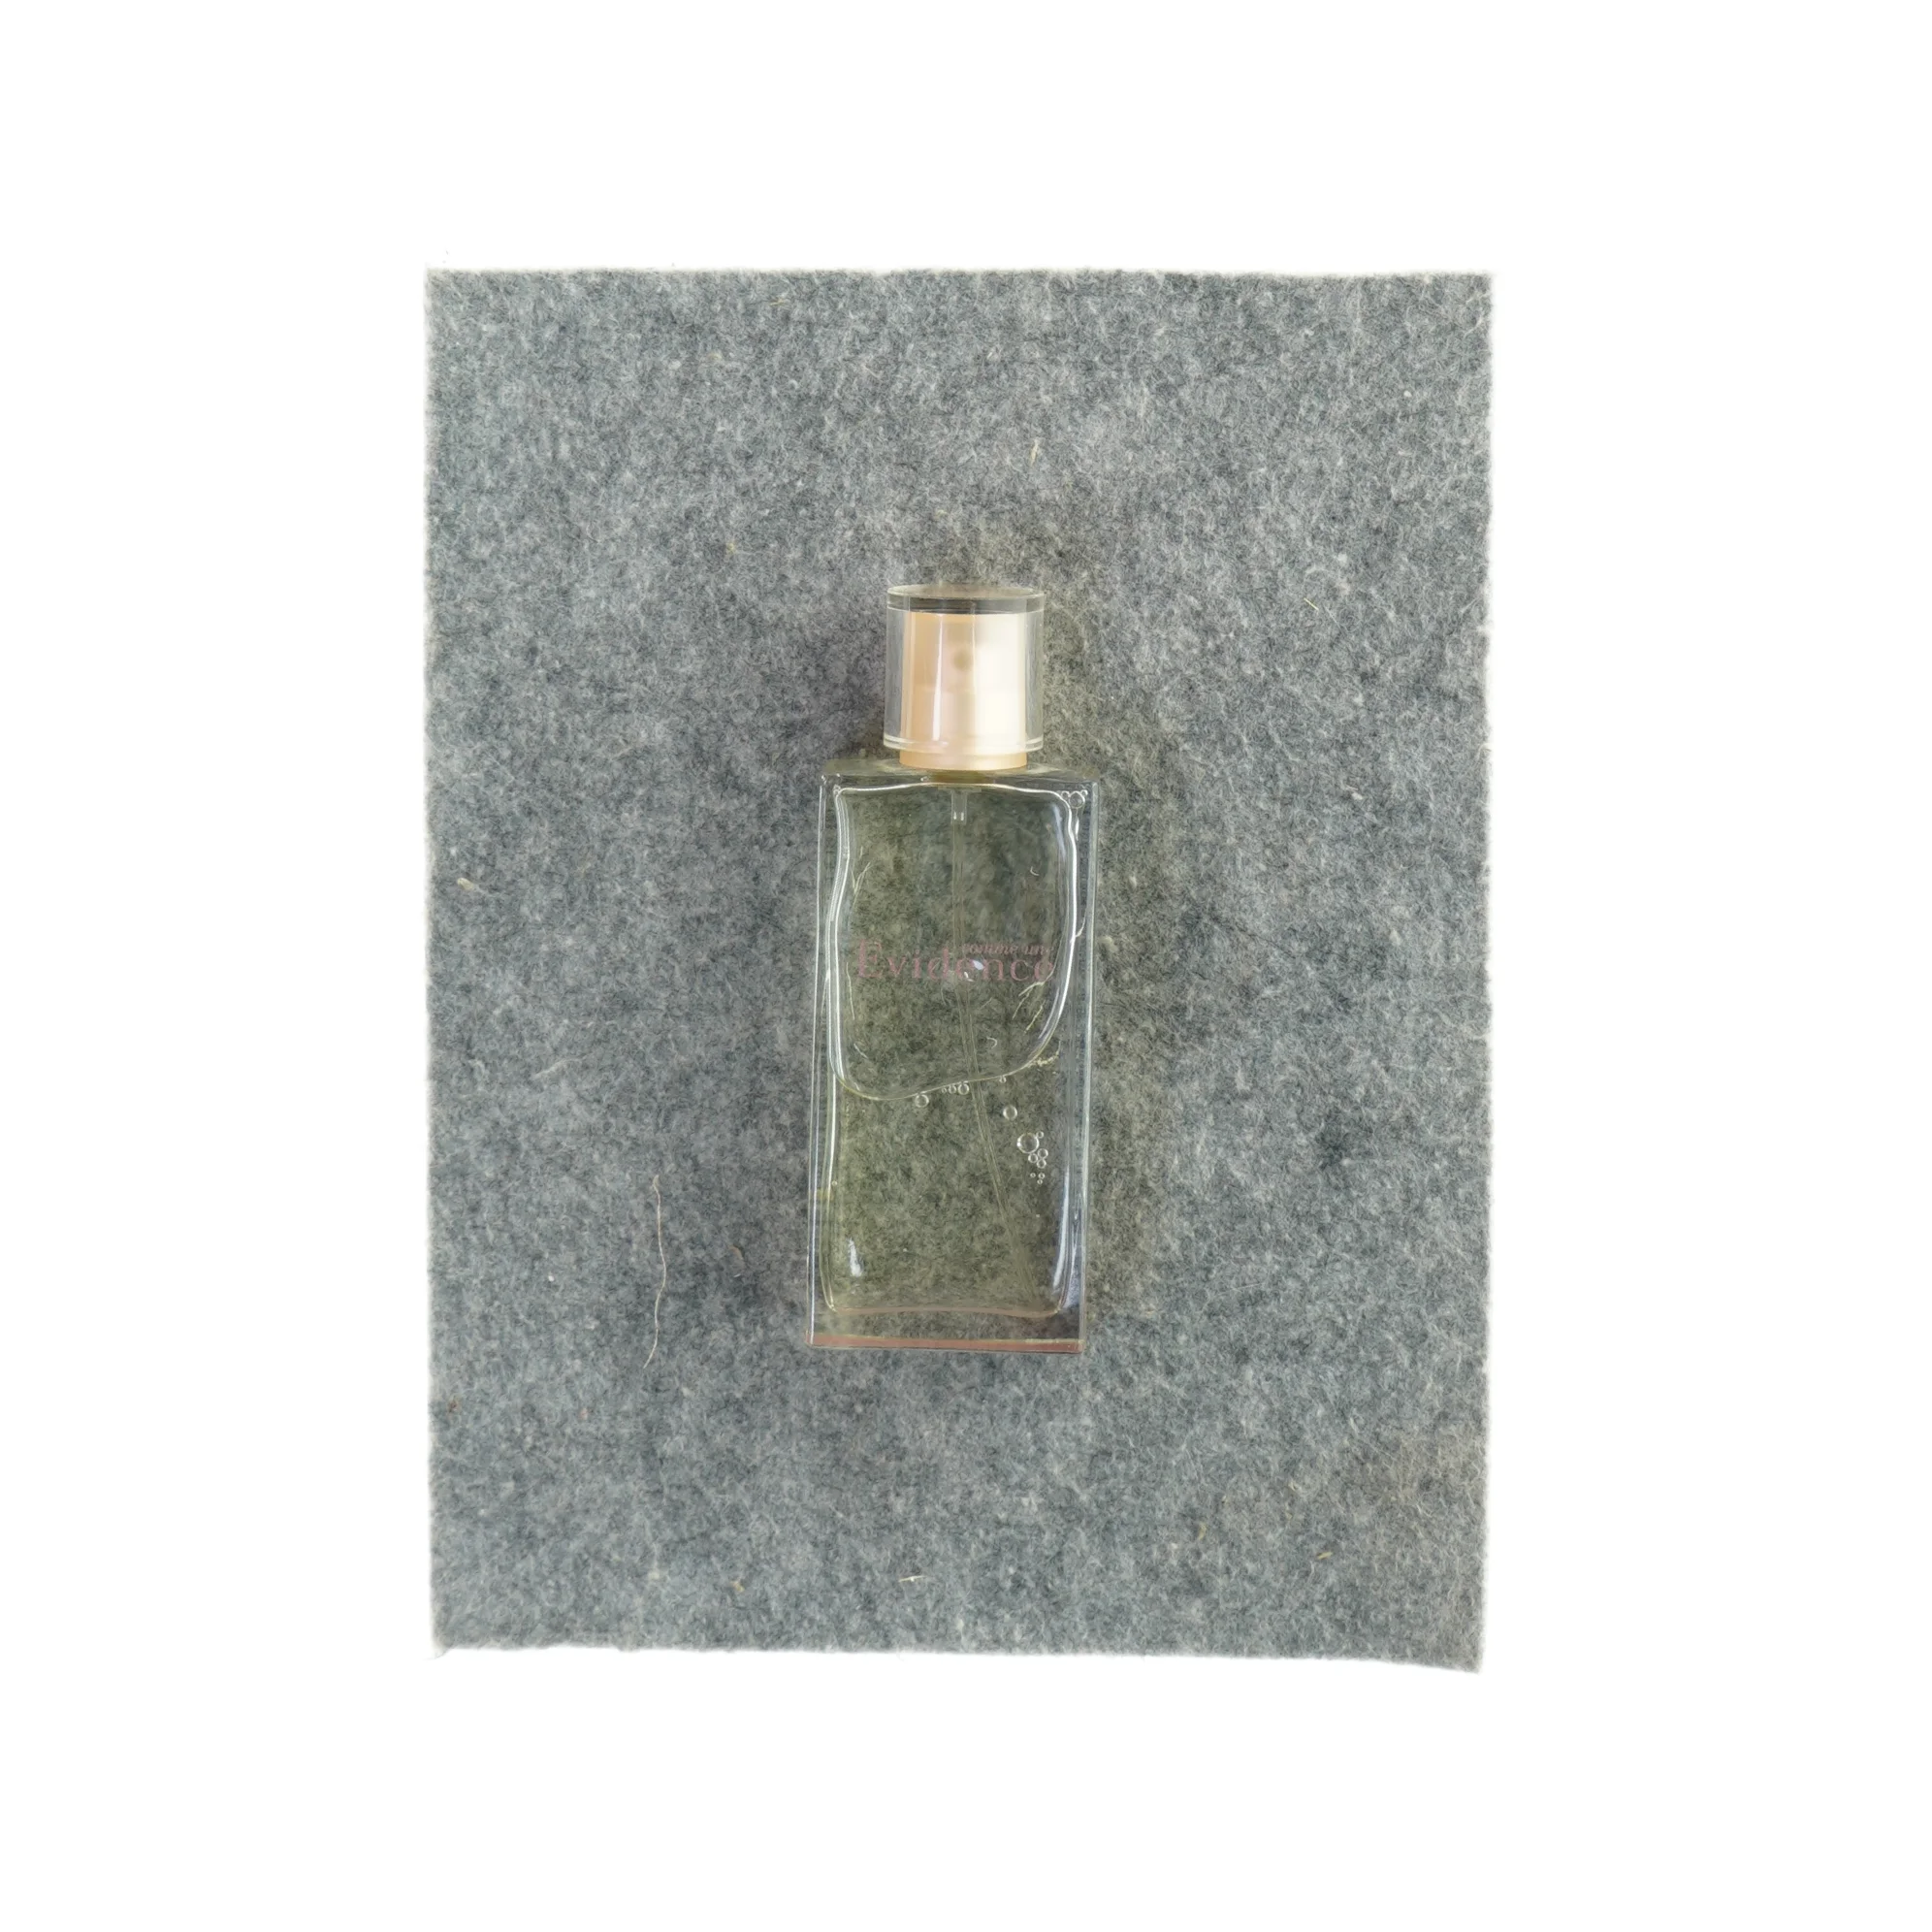 Comme une Évidence de Parfum (str. 14 x 6cm) | Orderly.shop